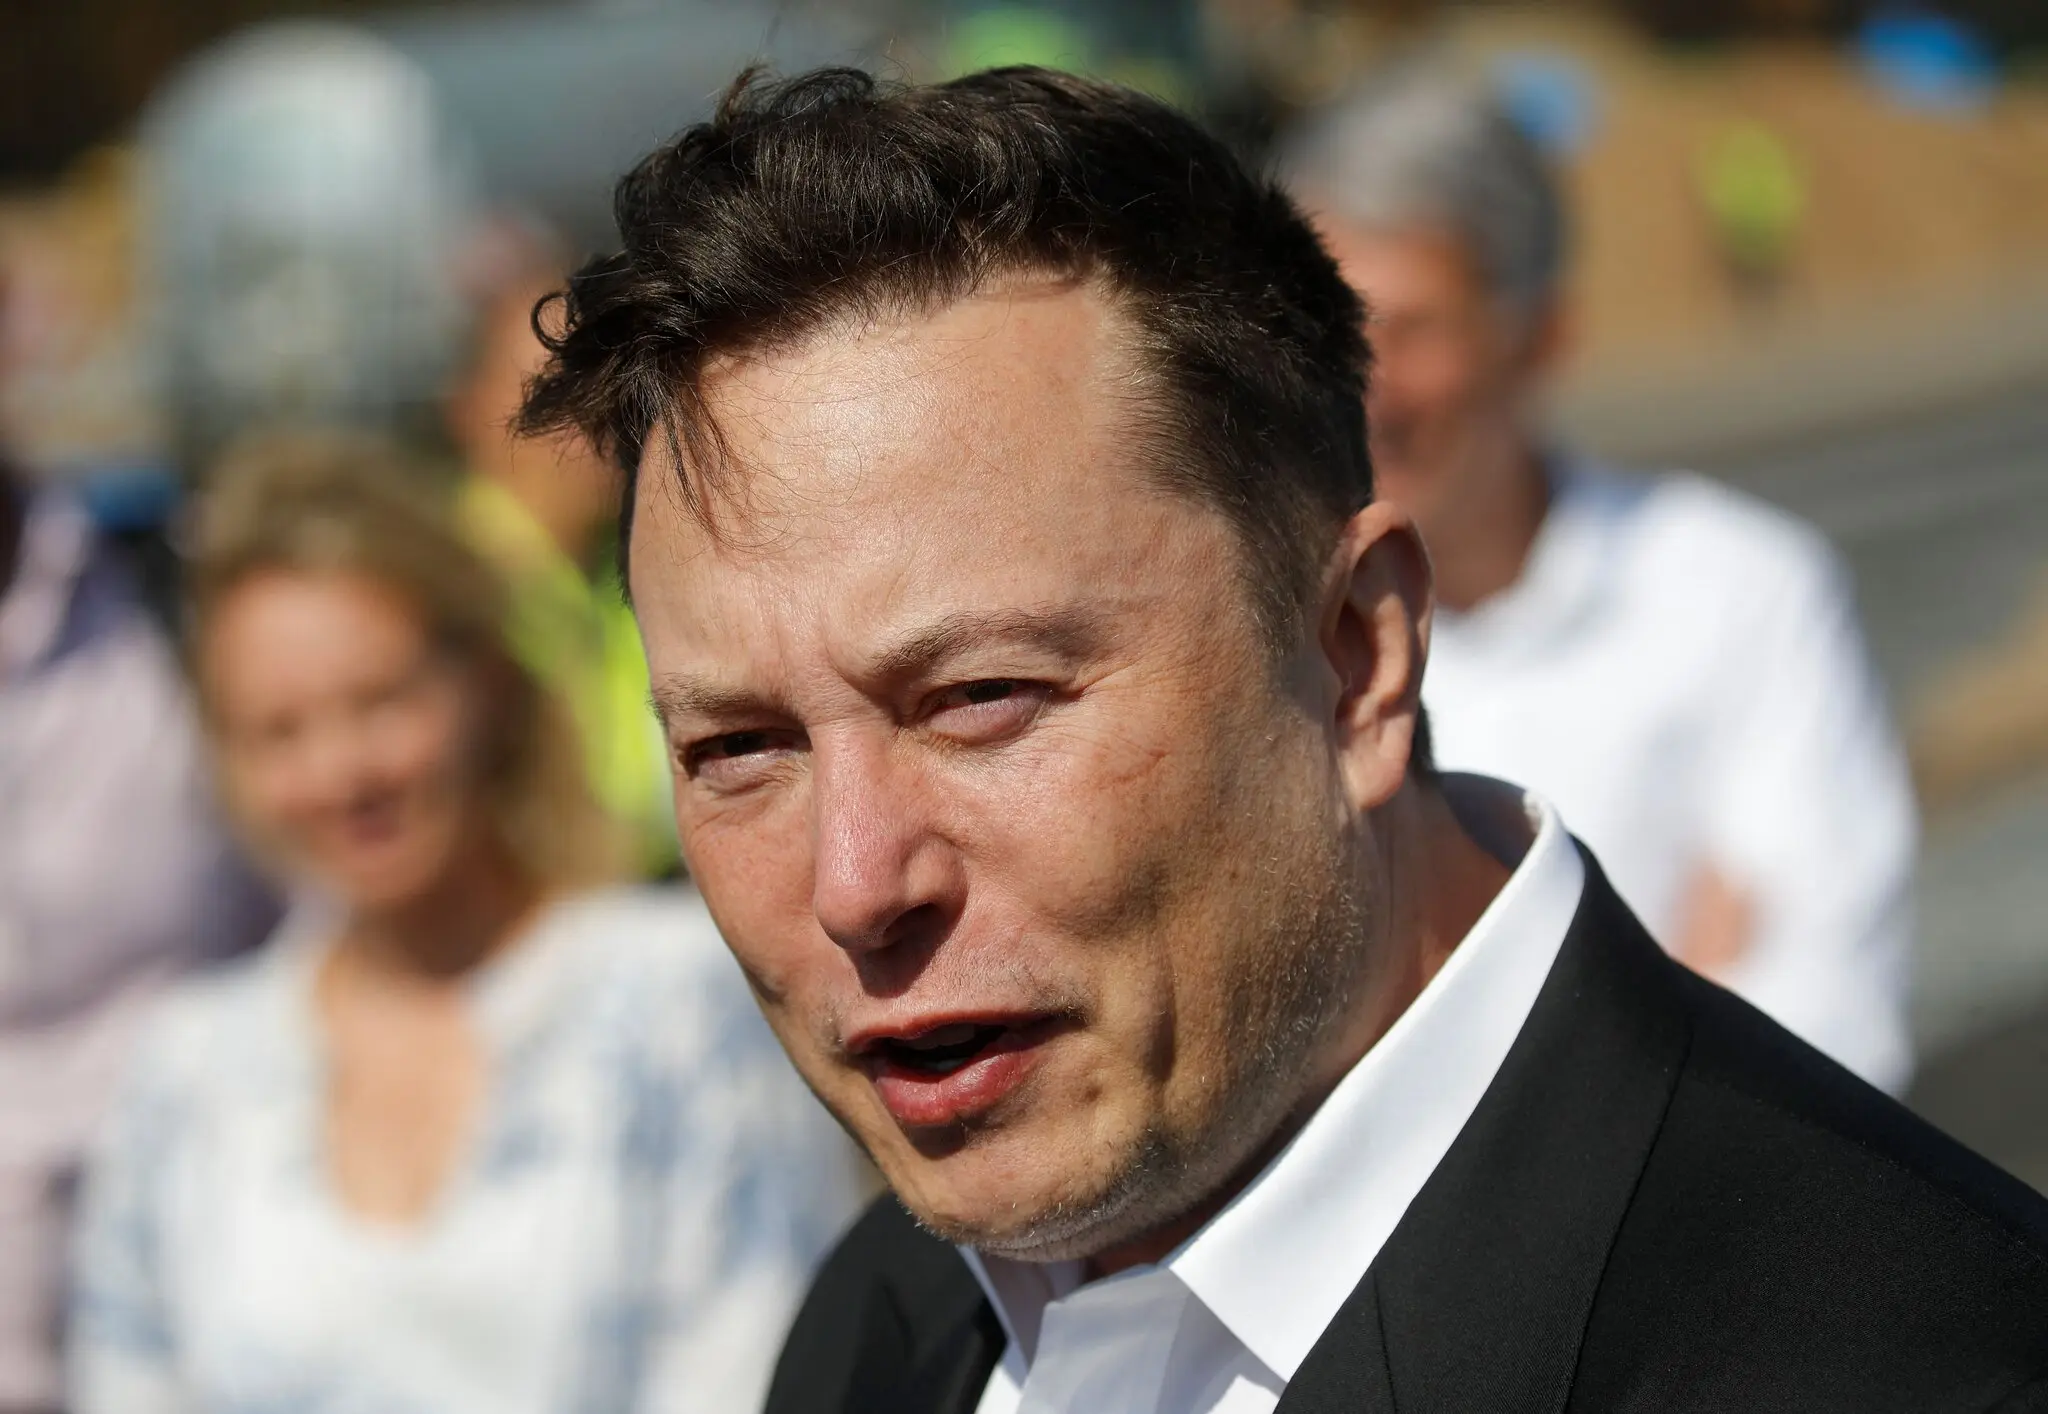 Dünya çığır açan projelerin yaratıcısı Elon Musk'ın biyografisini bekliyor